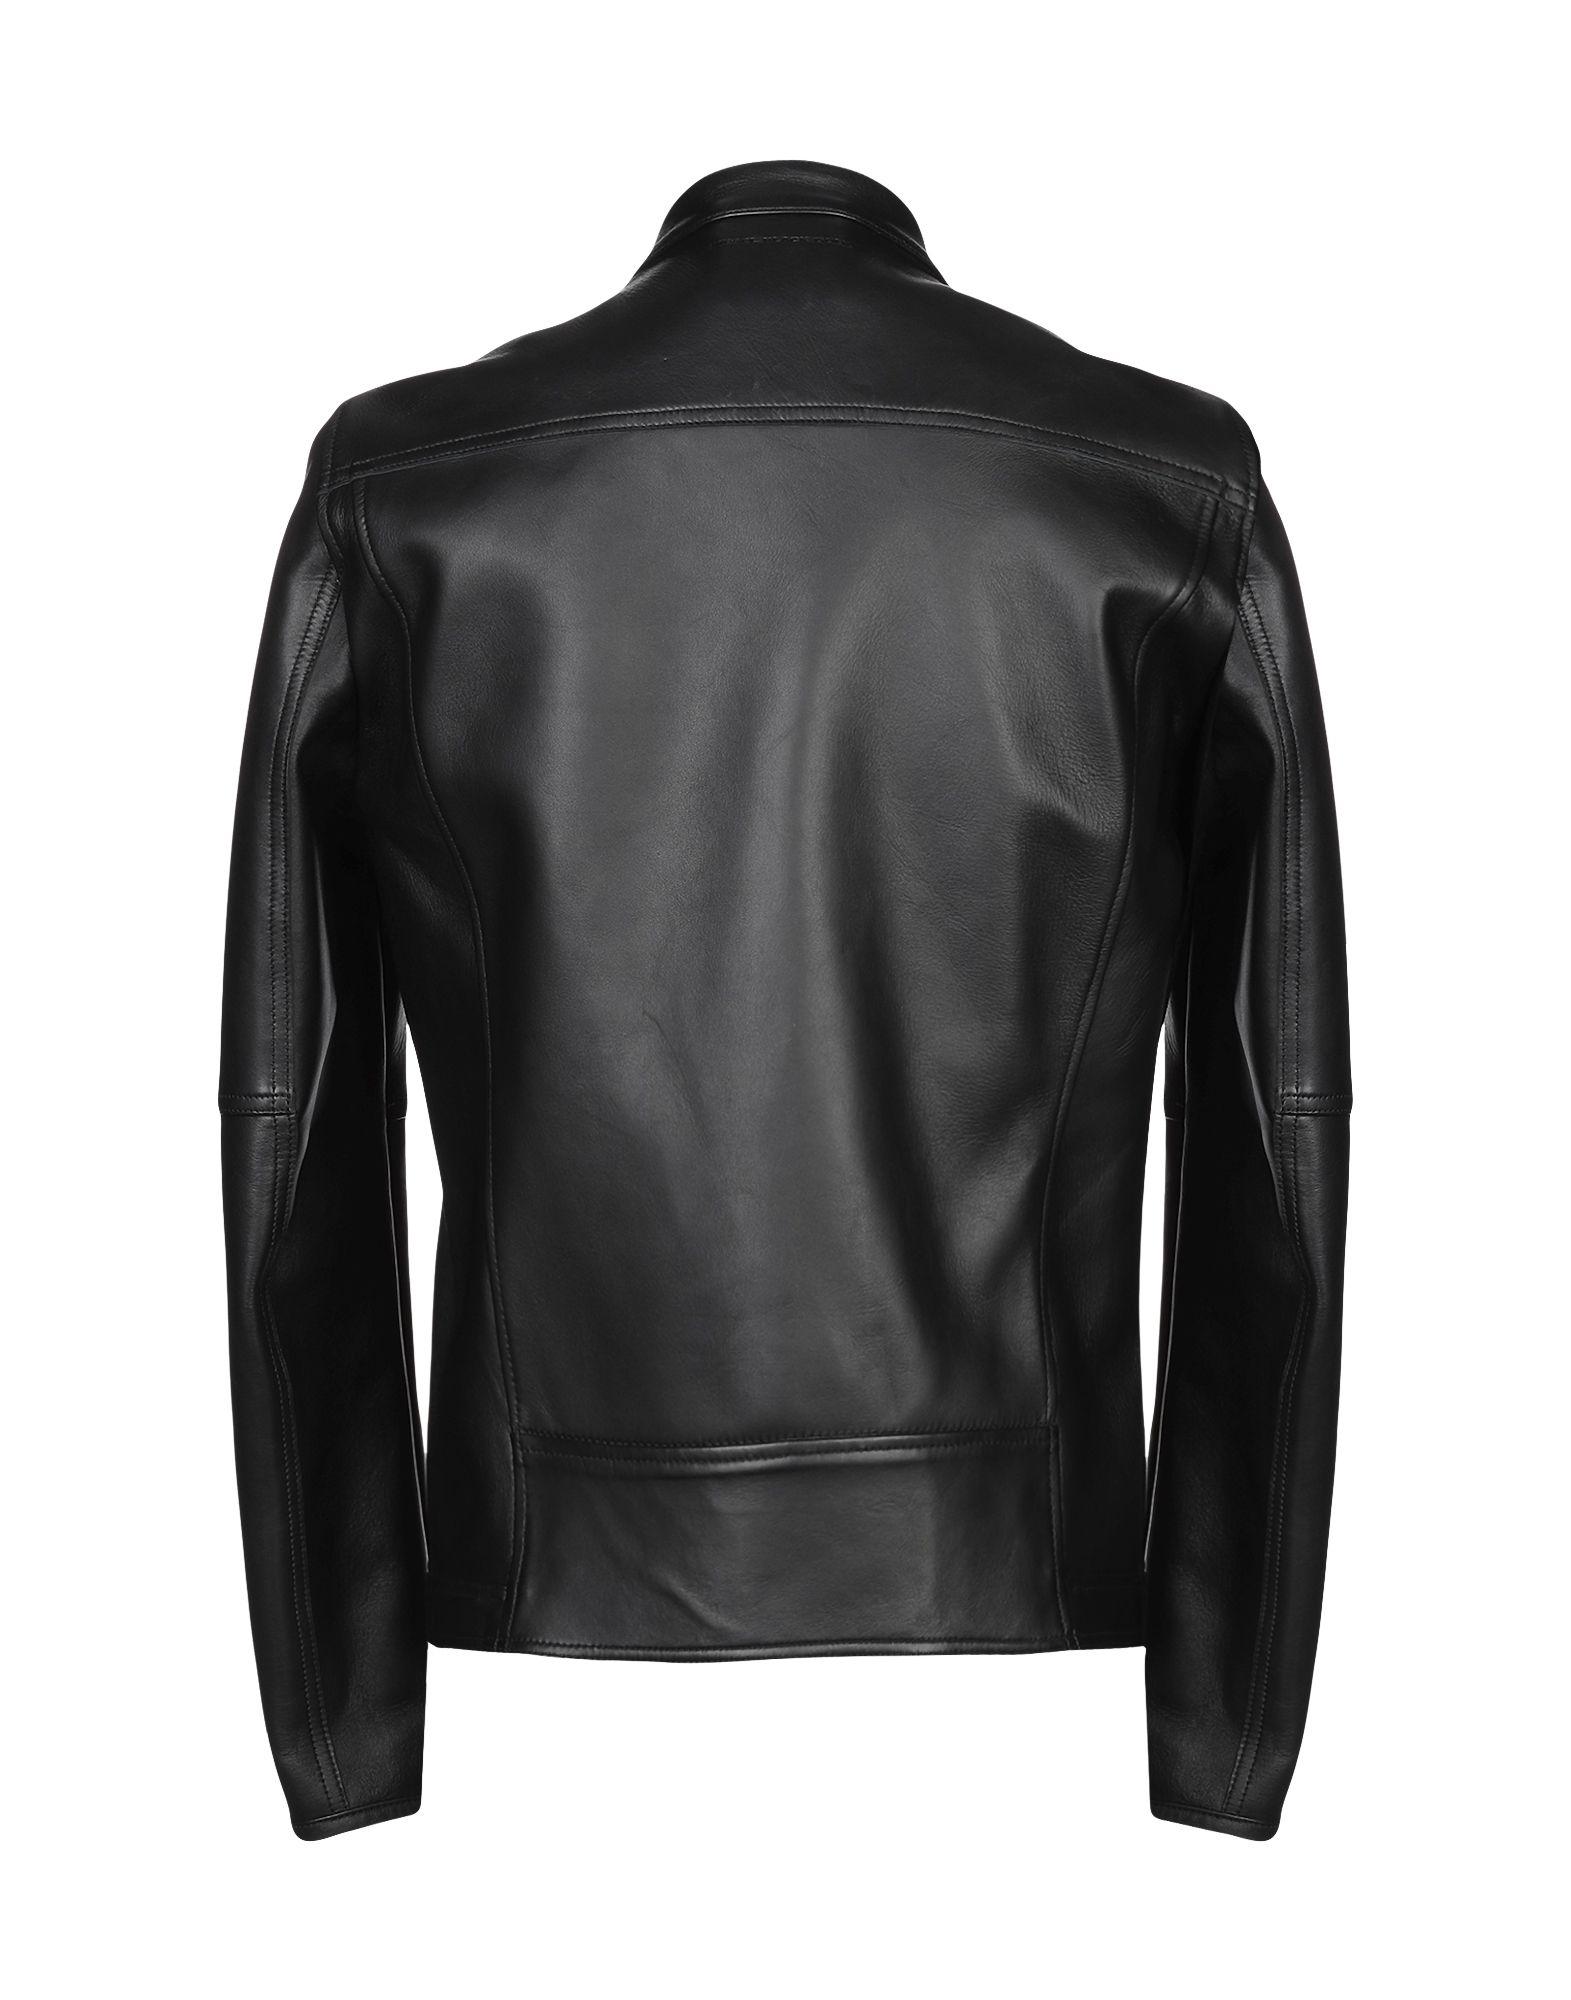 Diesel Black Gold Leather Jacket in Black for Men - Lyst